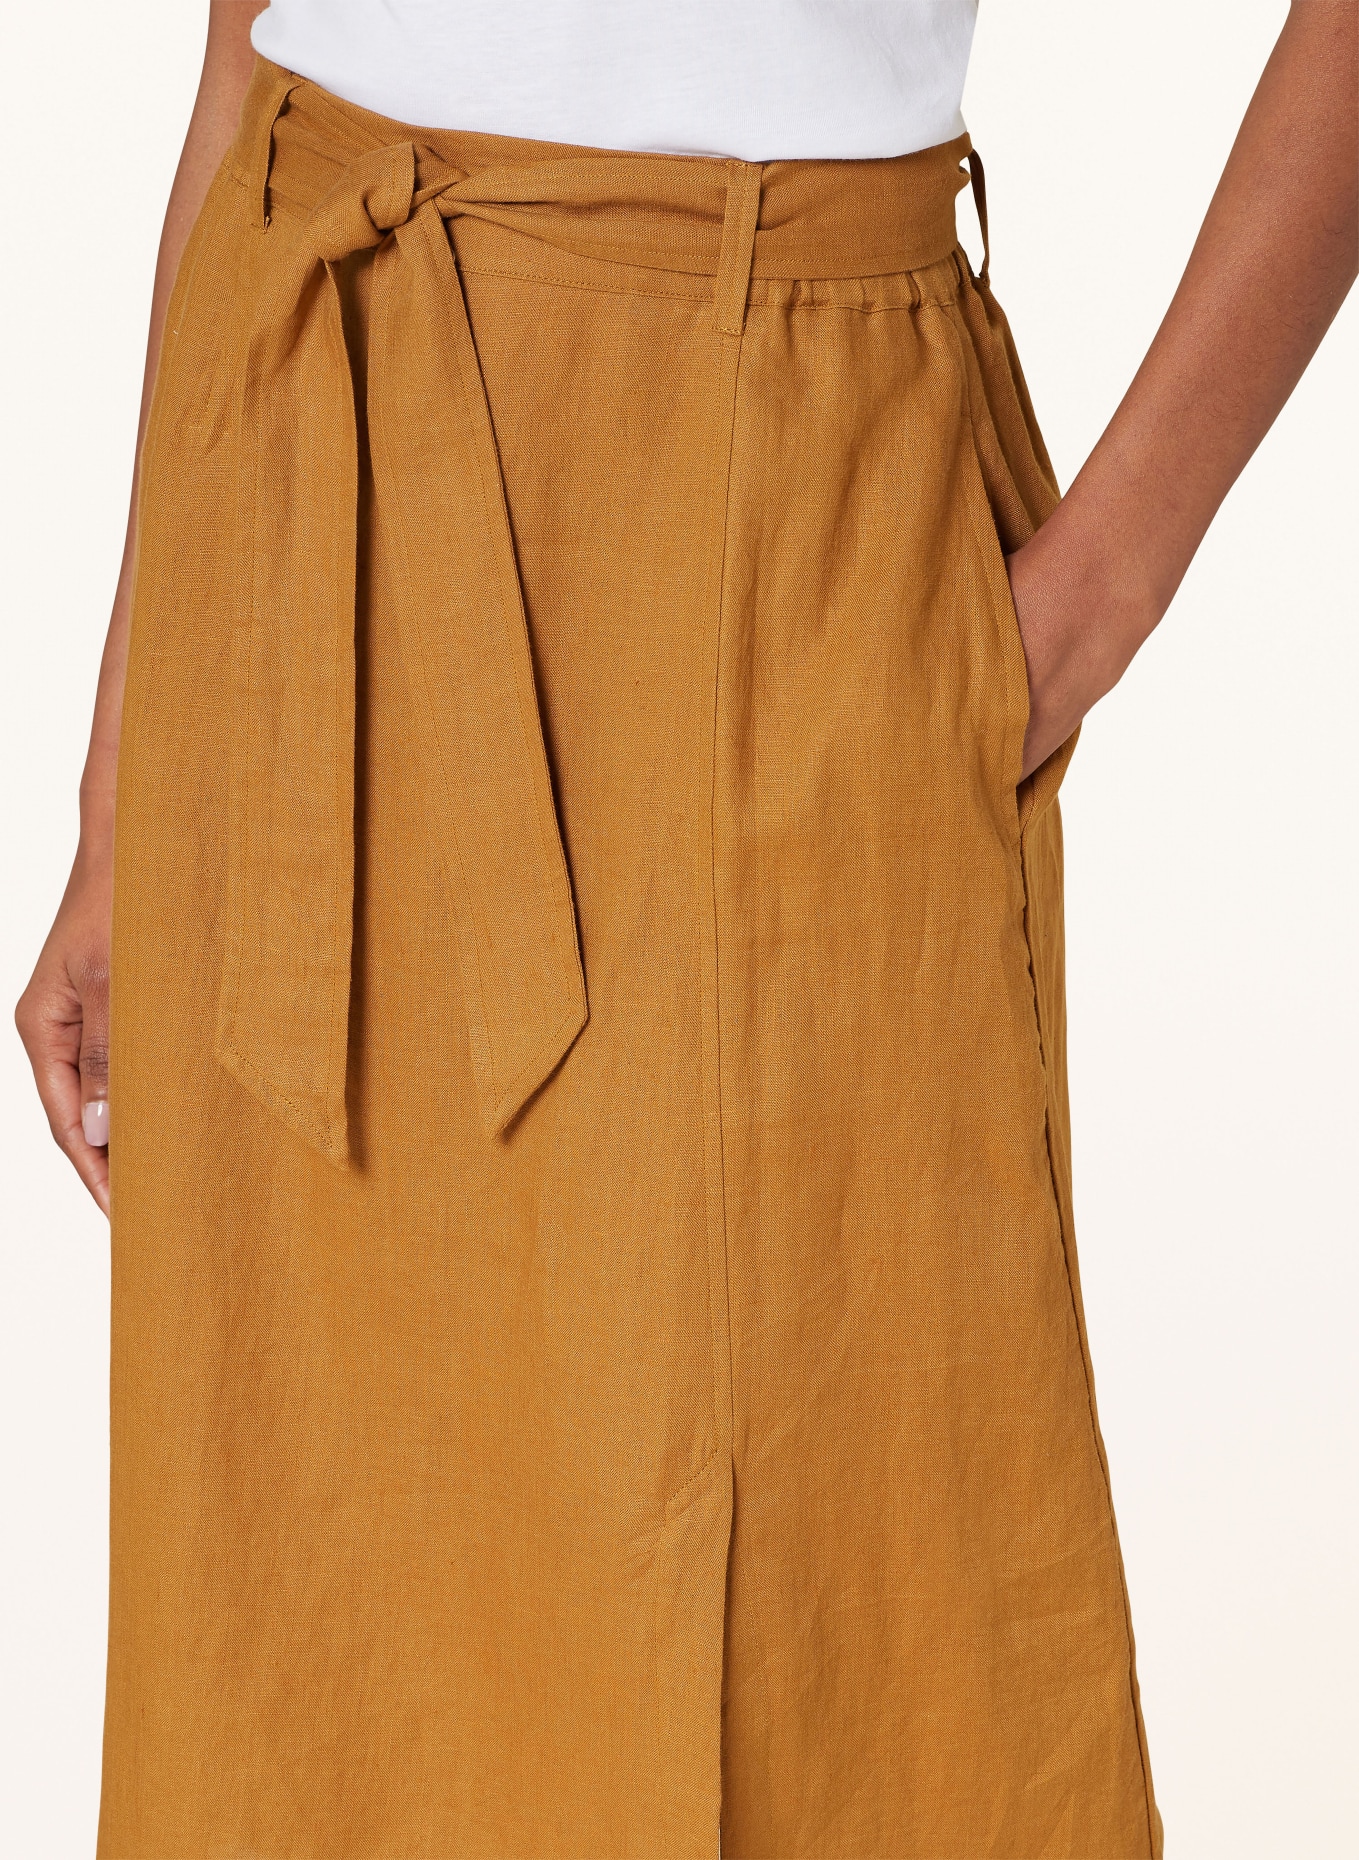 MAERZ MUENCHEN Linen skirt, Color: COGNAC (Image 4)